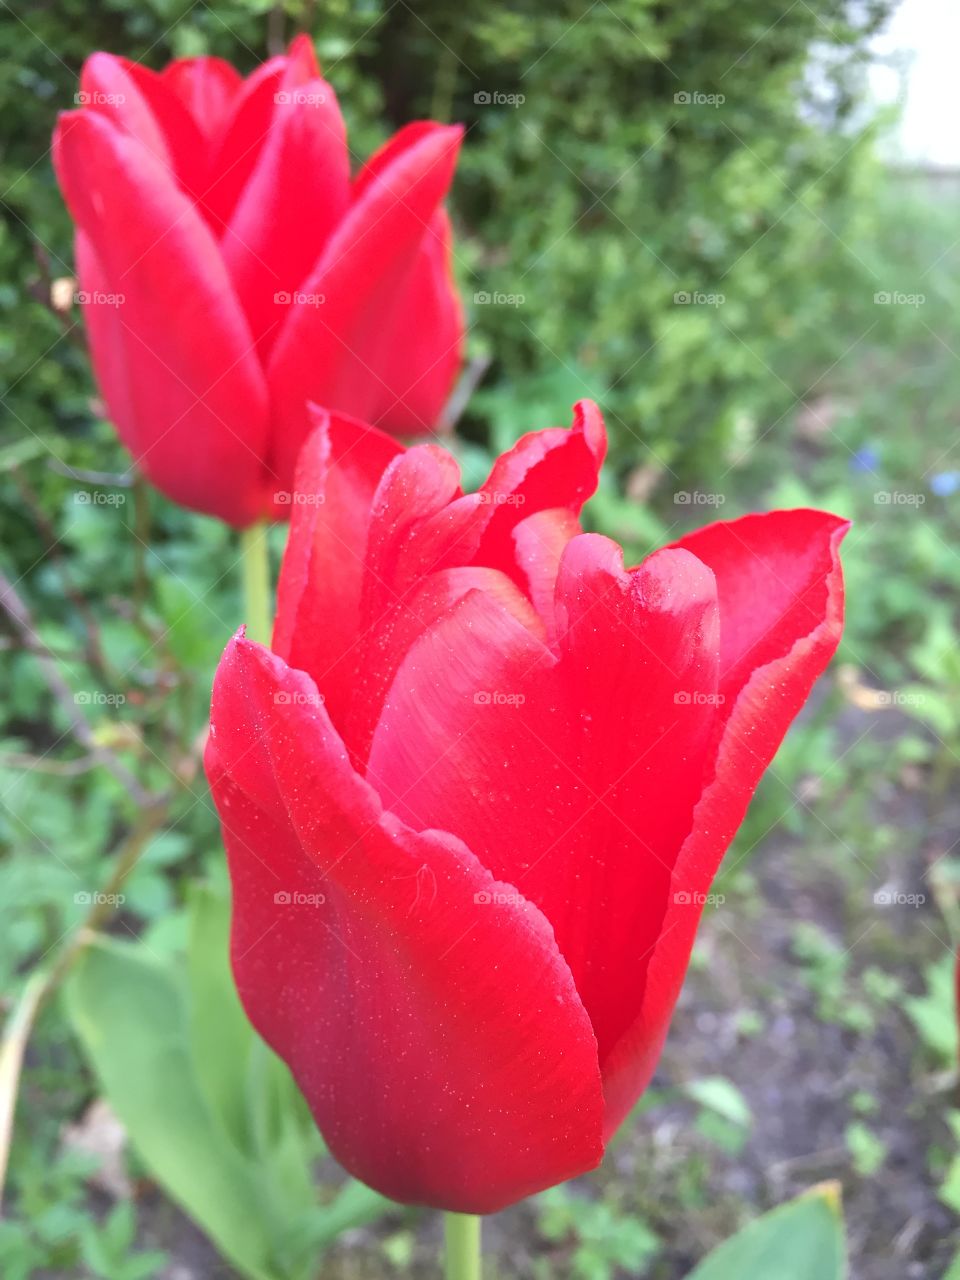 Tulips in my garden 